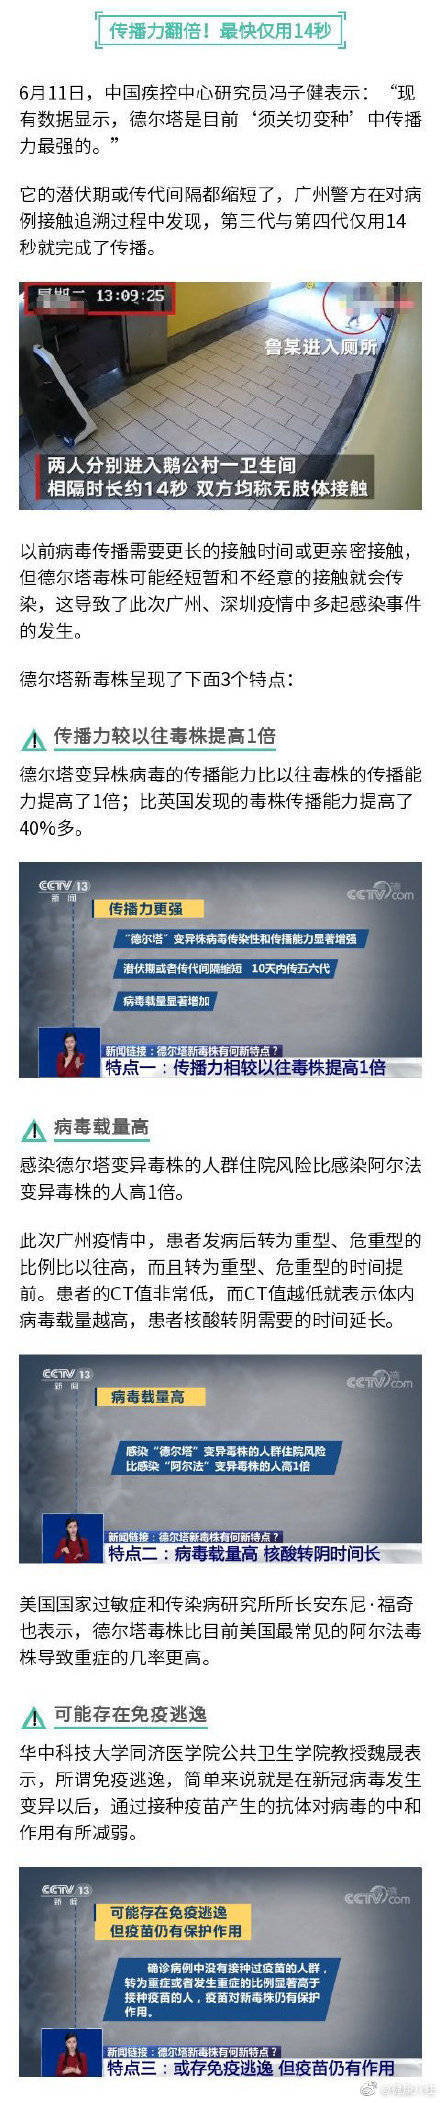 南京疫情传播至170人 德尔塔有3个传播特点 